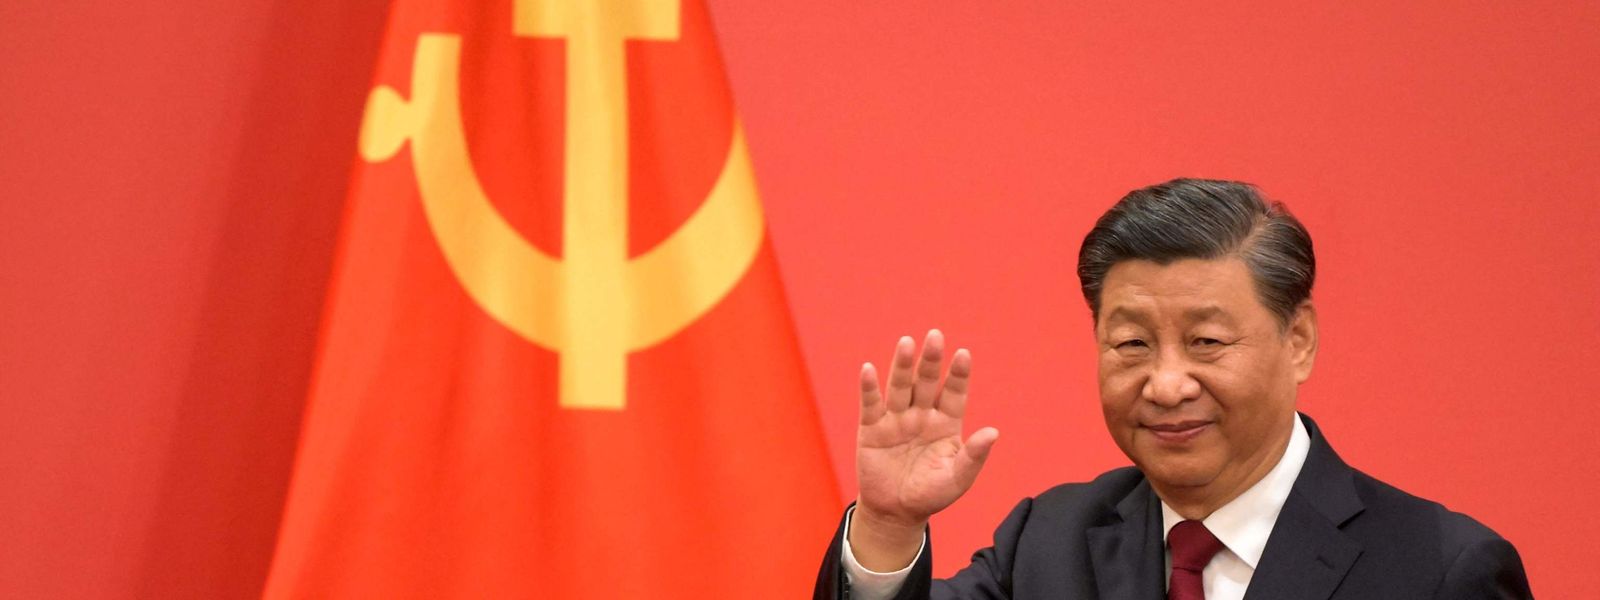 Fort de son nouveau mandat, Xi Jinping pourrait peut-être décider que le moment est venu pour Pékin de s'emparer de l'île de Taïwan.